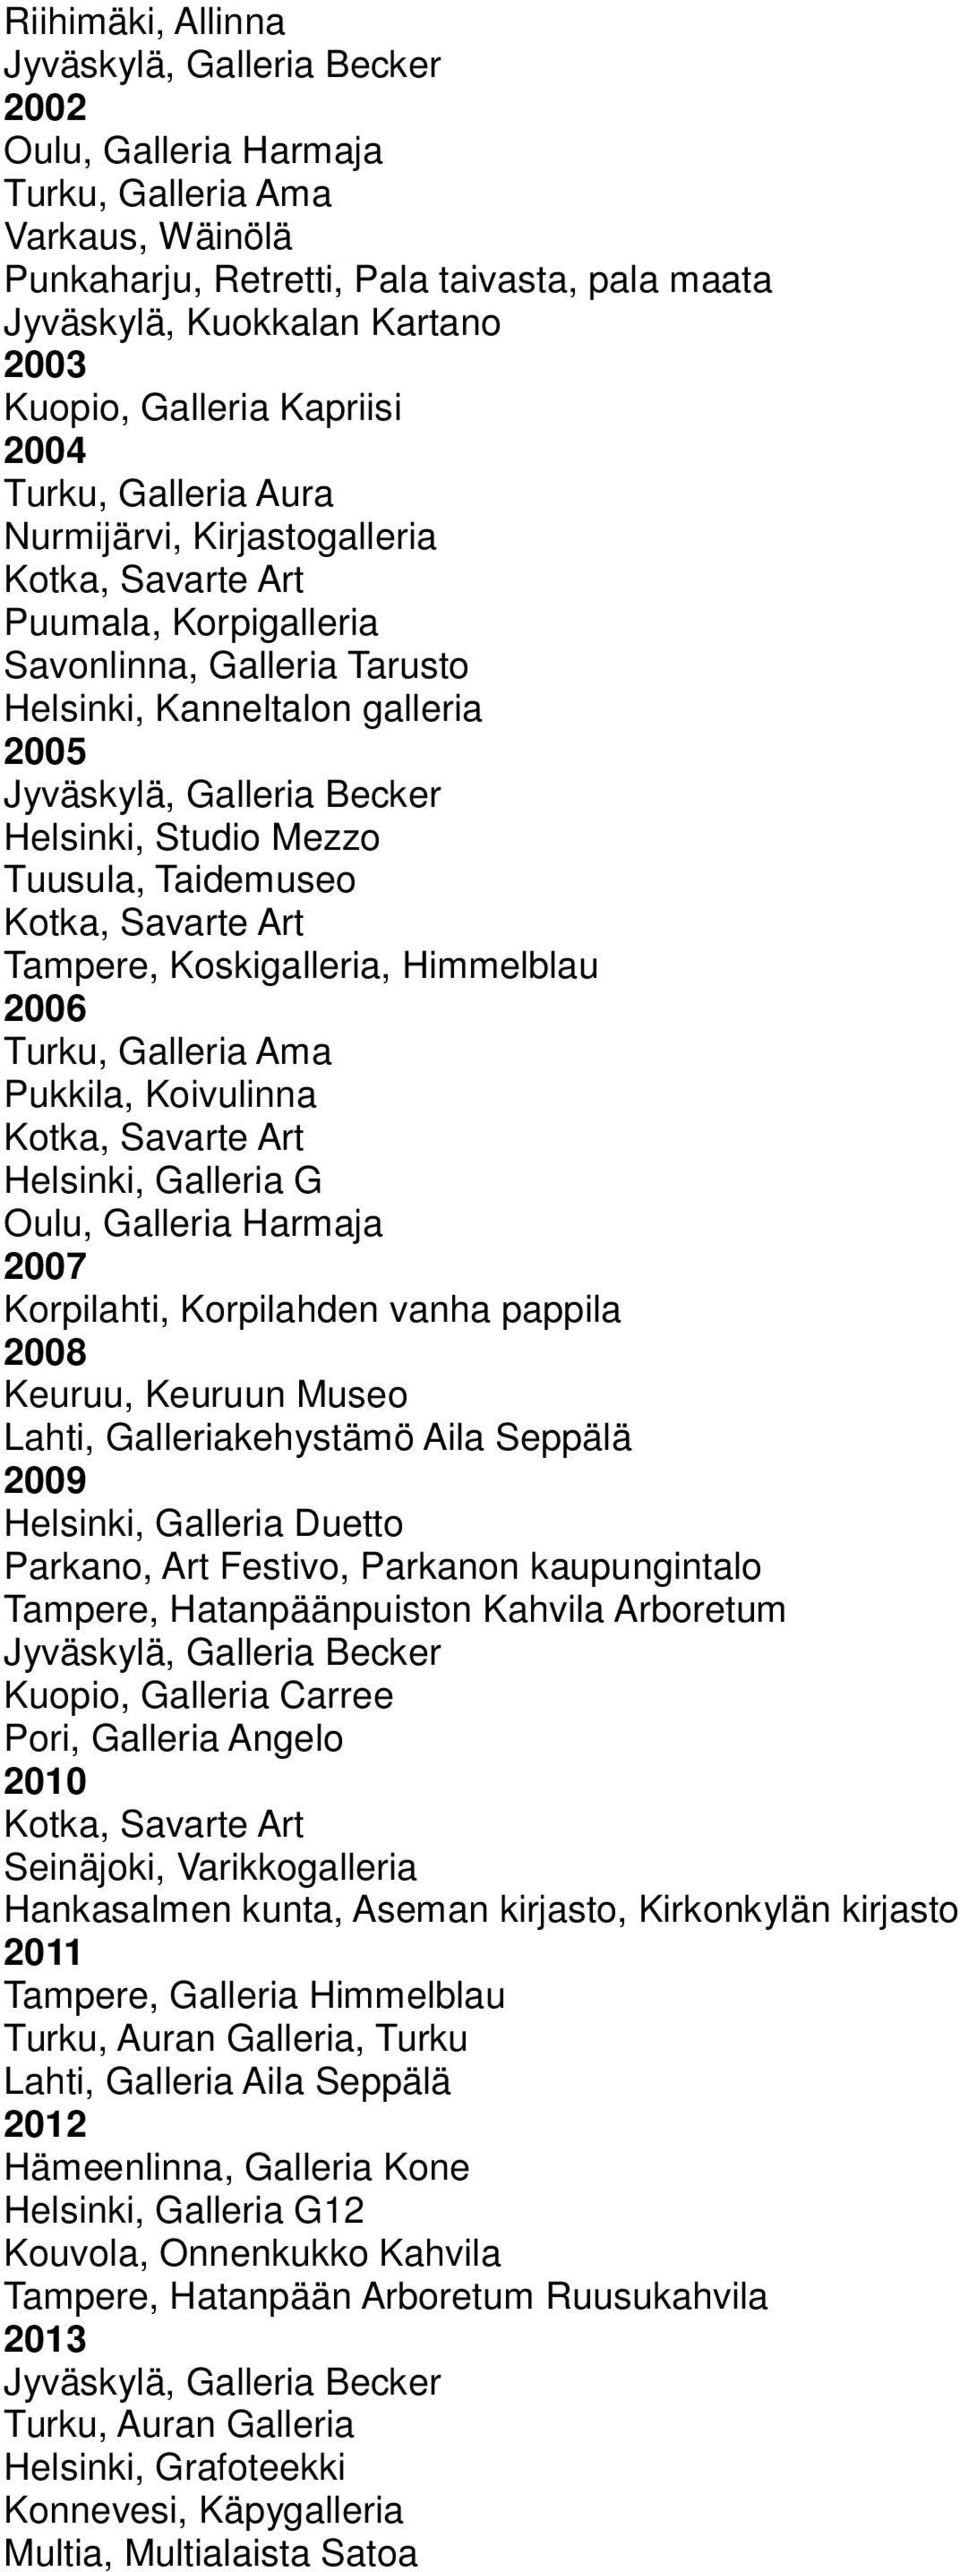 Koskigalleria, Himmelblau 2006 Turku, Galleria Ama Pukkila, Koivulinna Helsinki, Galleria G Oulu, Galleria Harmaja 2007 Korpilahti, Korpilahden vanha pappila 2008 Keuruu, Keuruun Museo Lahti,